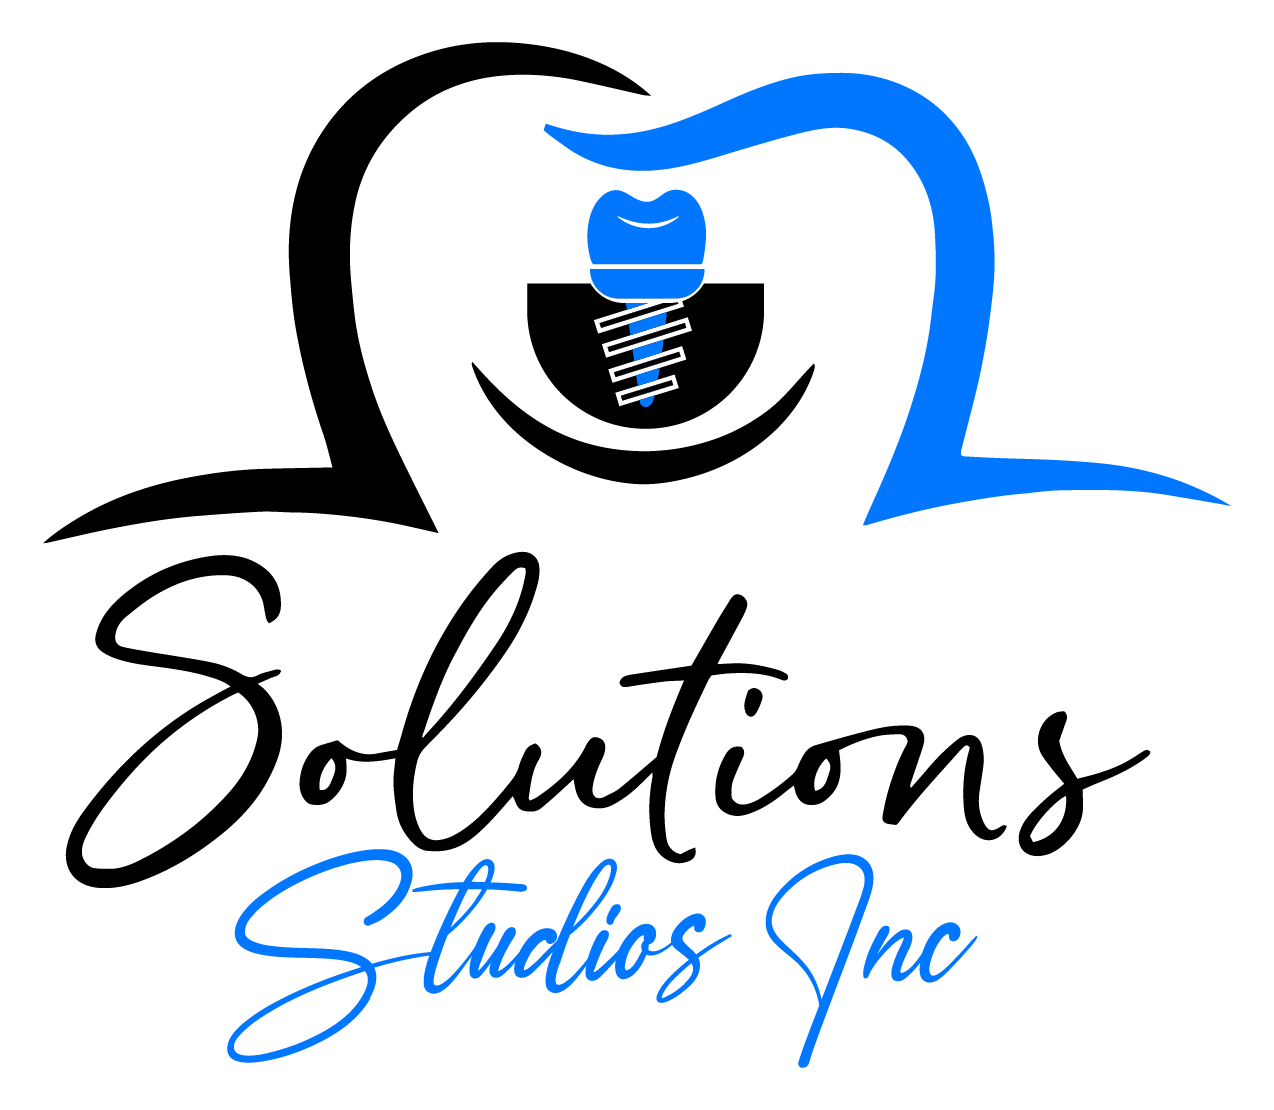 Solutions Studios Inc.